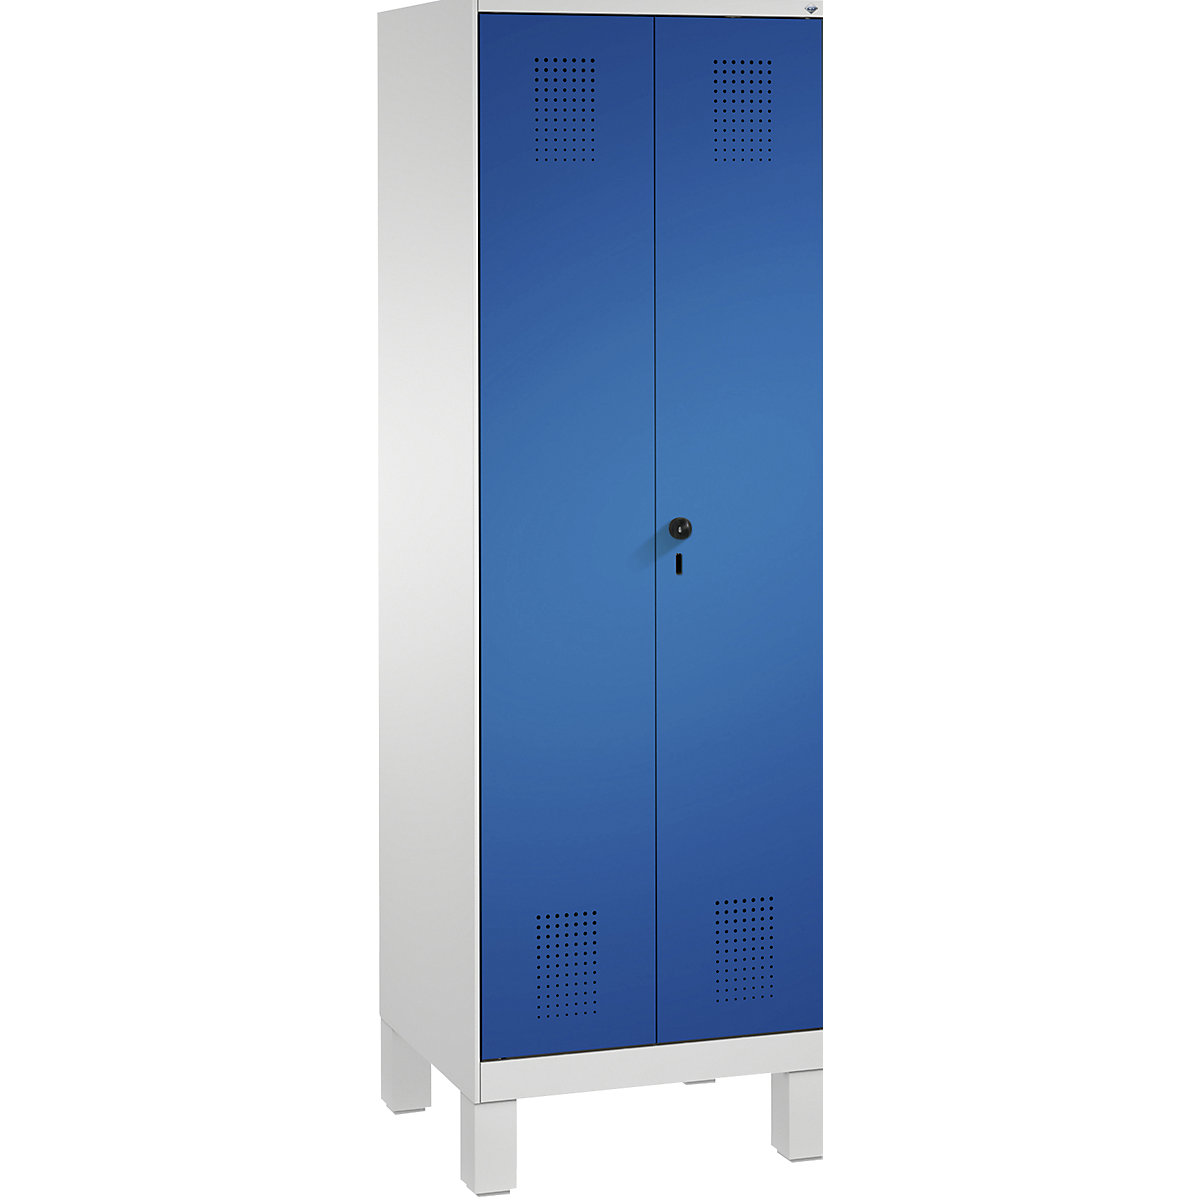 Úklidová/přístrojová skříň EVOLO – C+P, zkrácená dělicí stěna, 6 háků, oddíly 2 x 300 mm, s nohami, světlá šedá / enciánová modrá-7